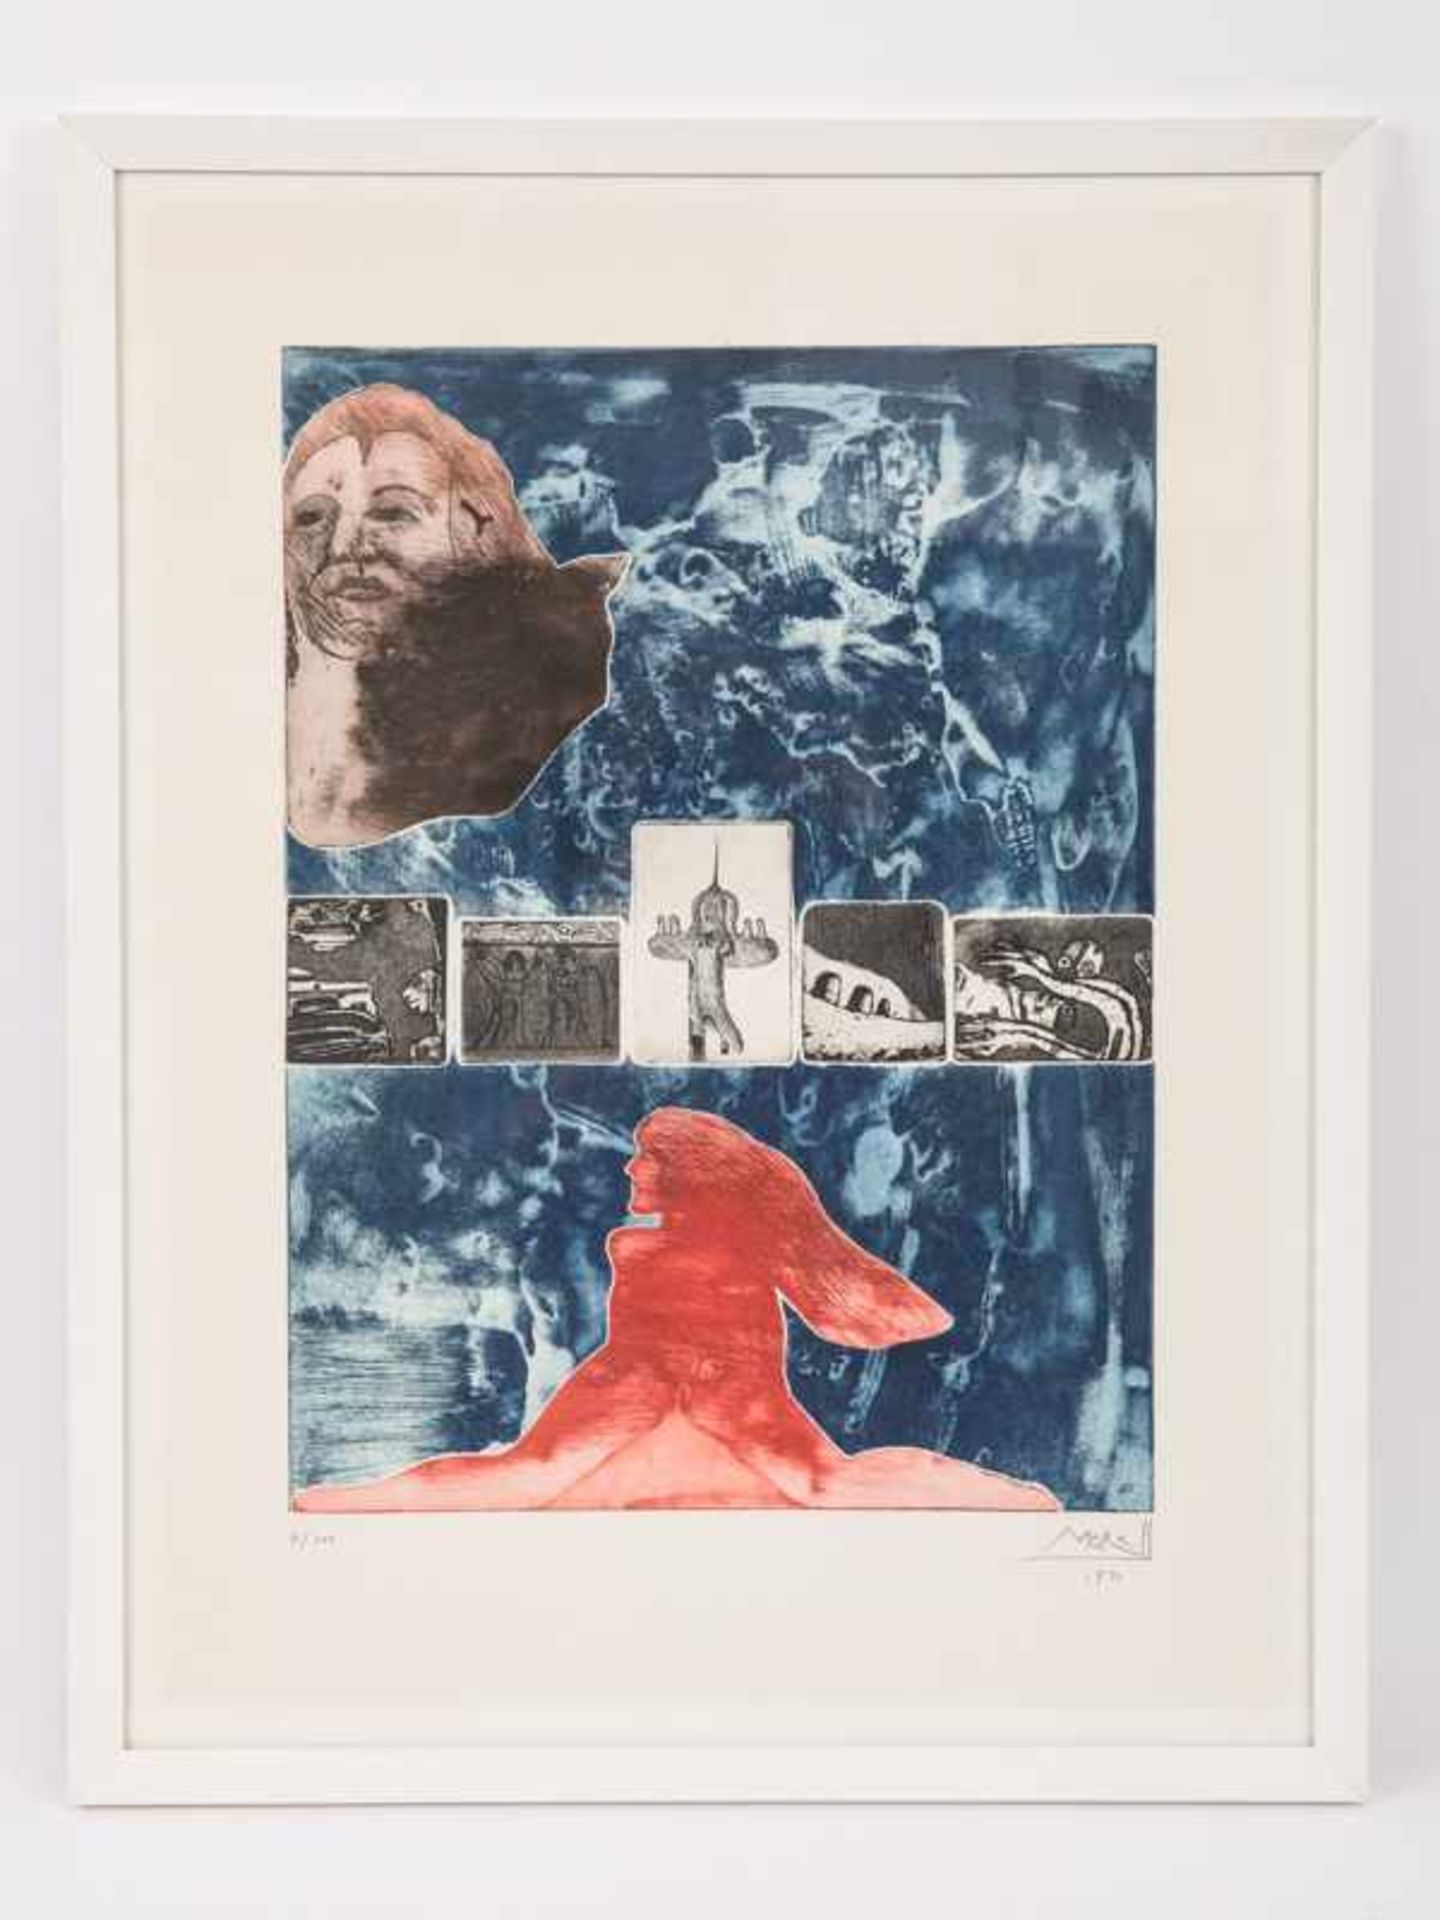 Morell, Pit (* 1939). Farb-Aquatintaradierung. Blaugrundige Komposition mit rotem weiblichen Akt,